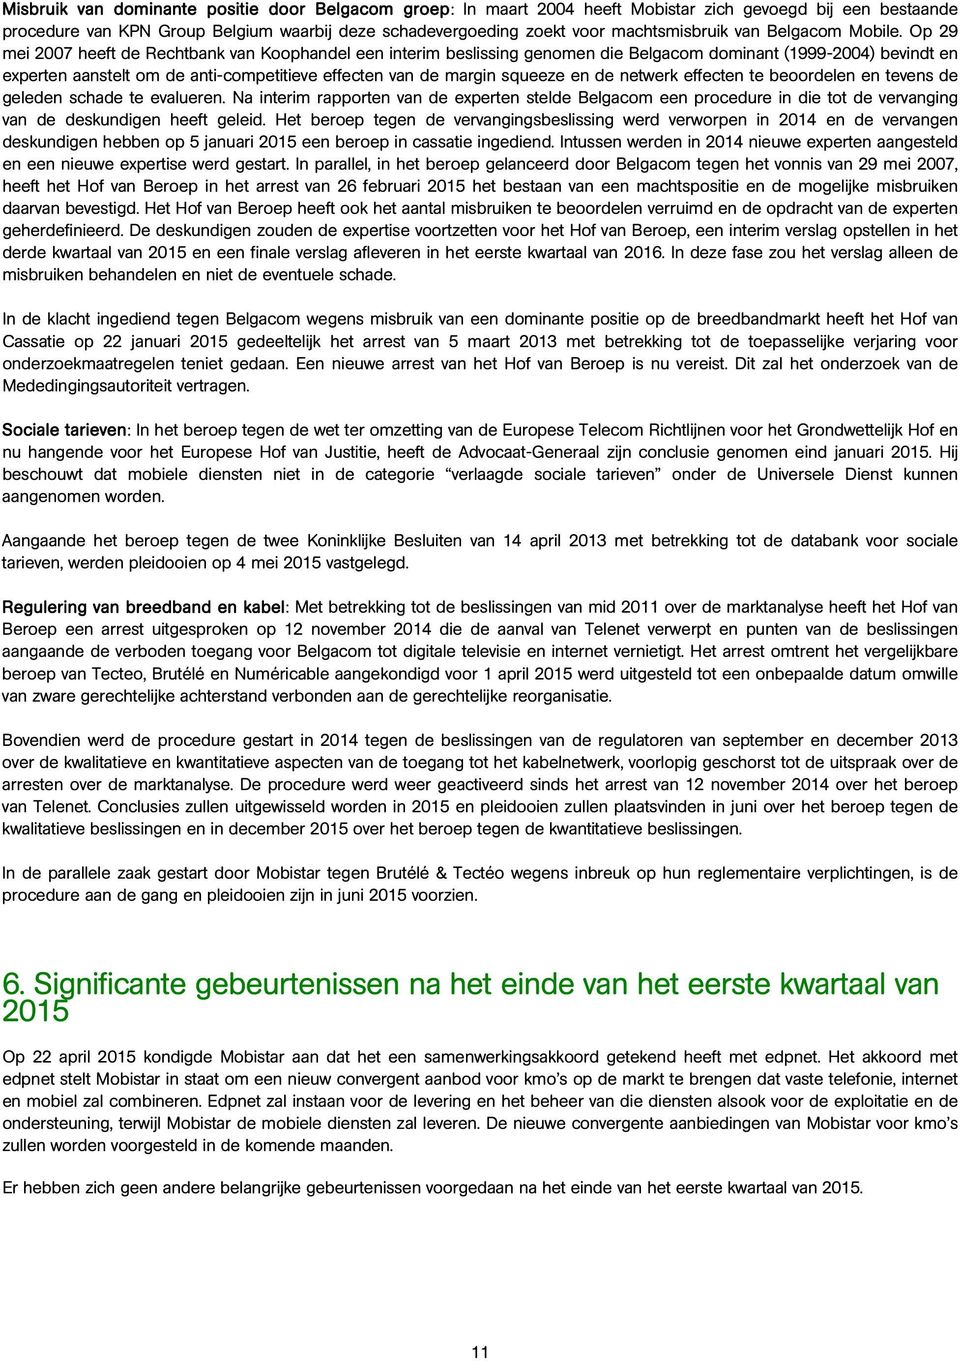 Op 29 mei 2007 heeft de Rechtbank van Koophandel een interim beslissing genomen die Belgacom dominant (1999-2004) bevindt en experten aanstelt om de anti-competitieve effecten van de margin squeeze